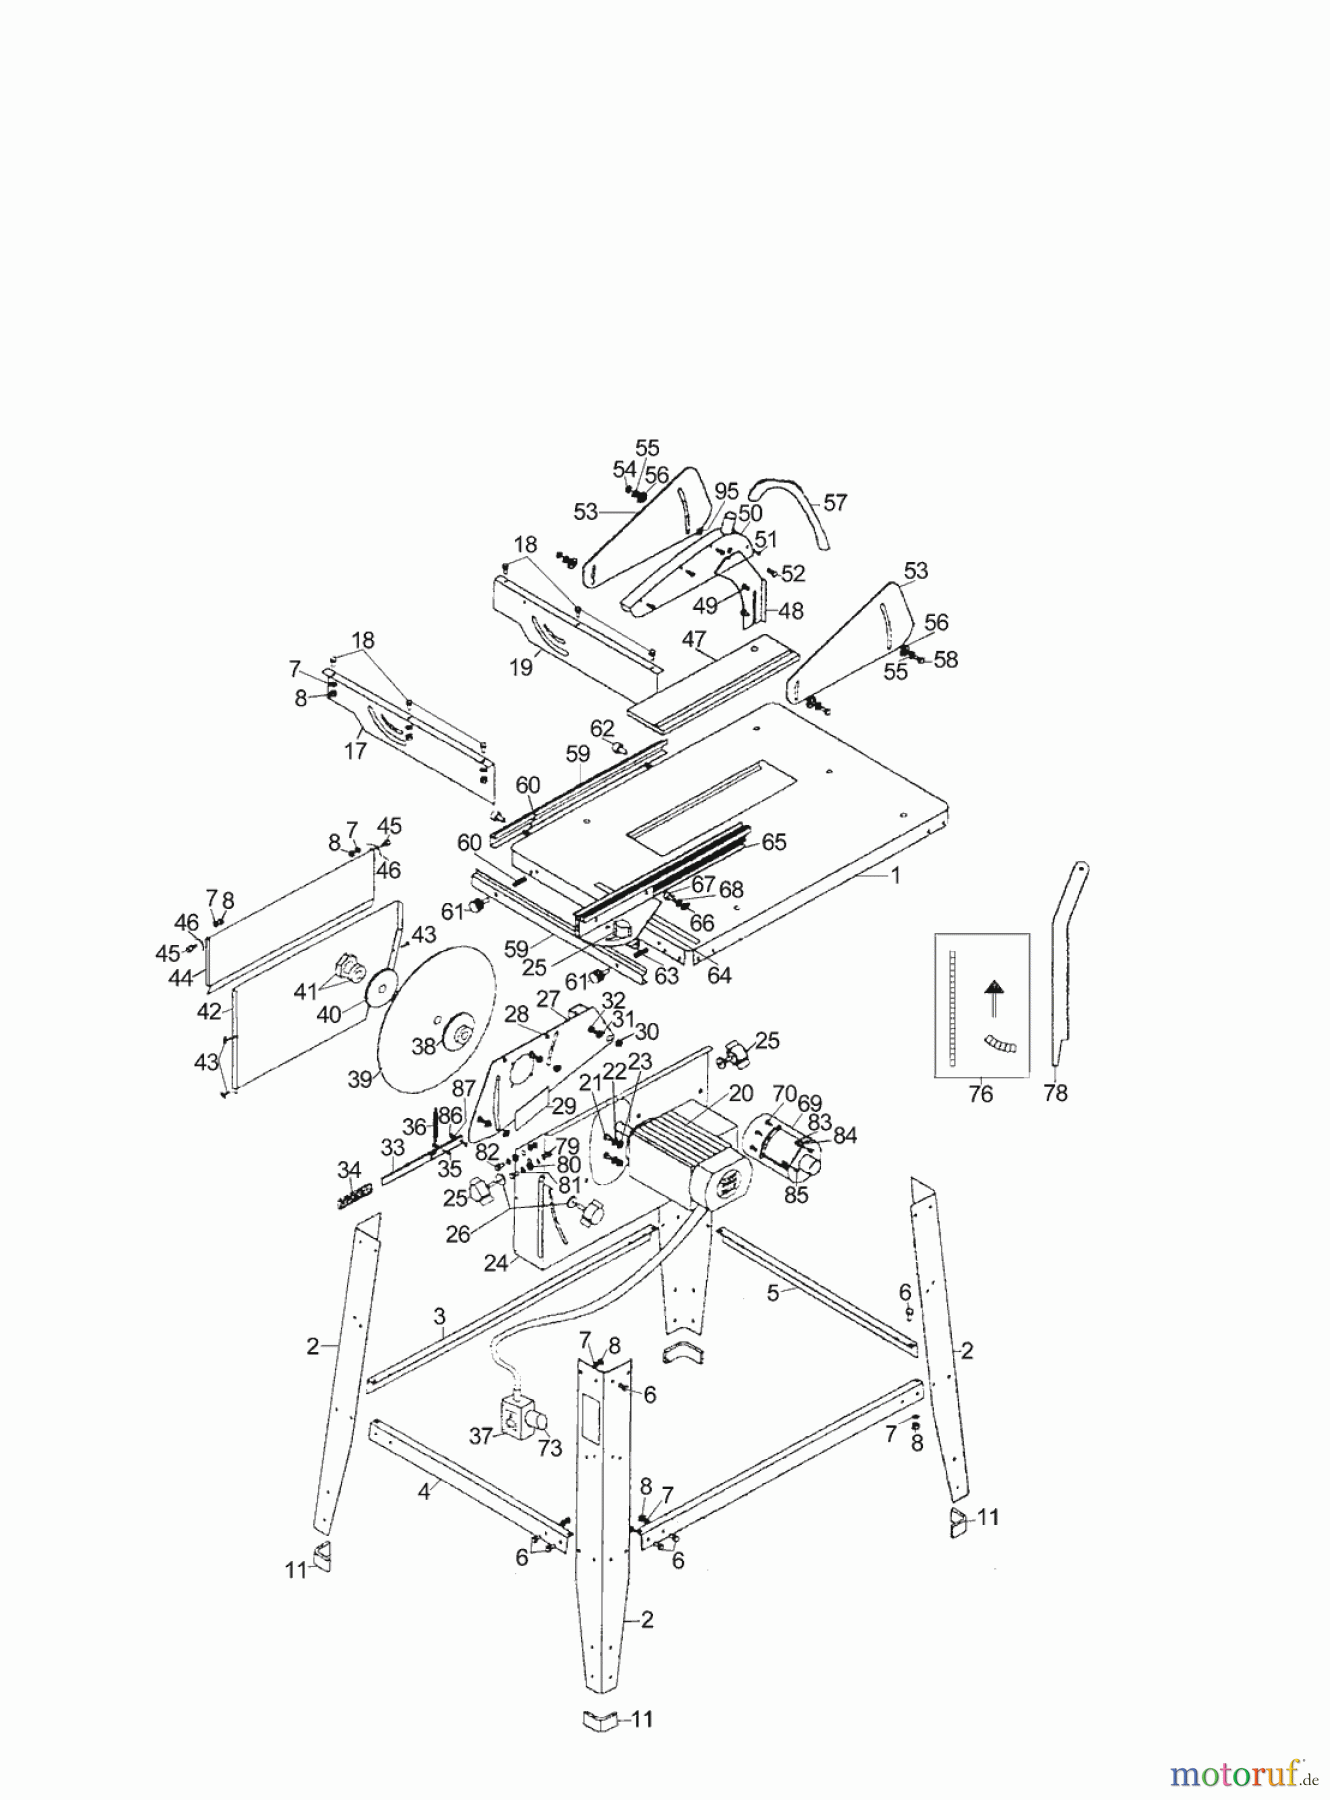  AL-KO Heimwerkertechnik Tischkreissägen TK 2500 S Seite 1